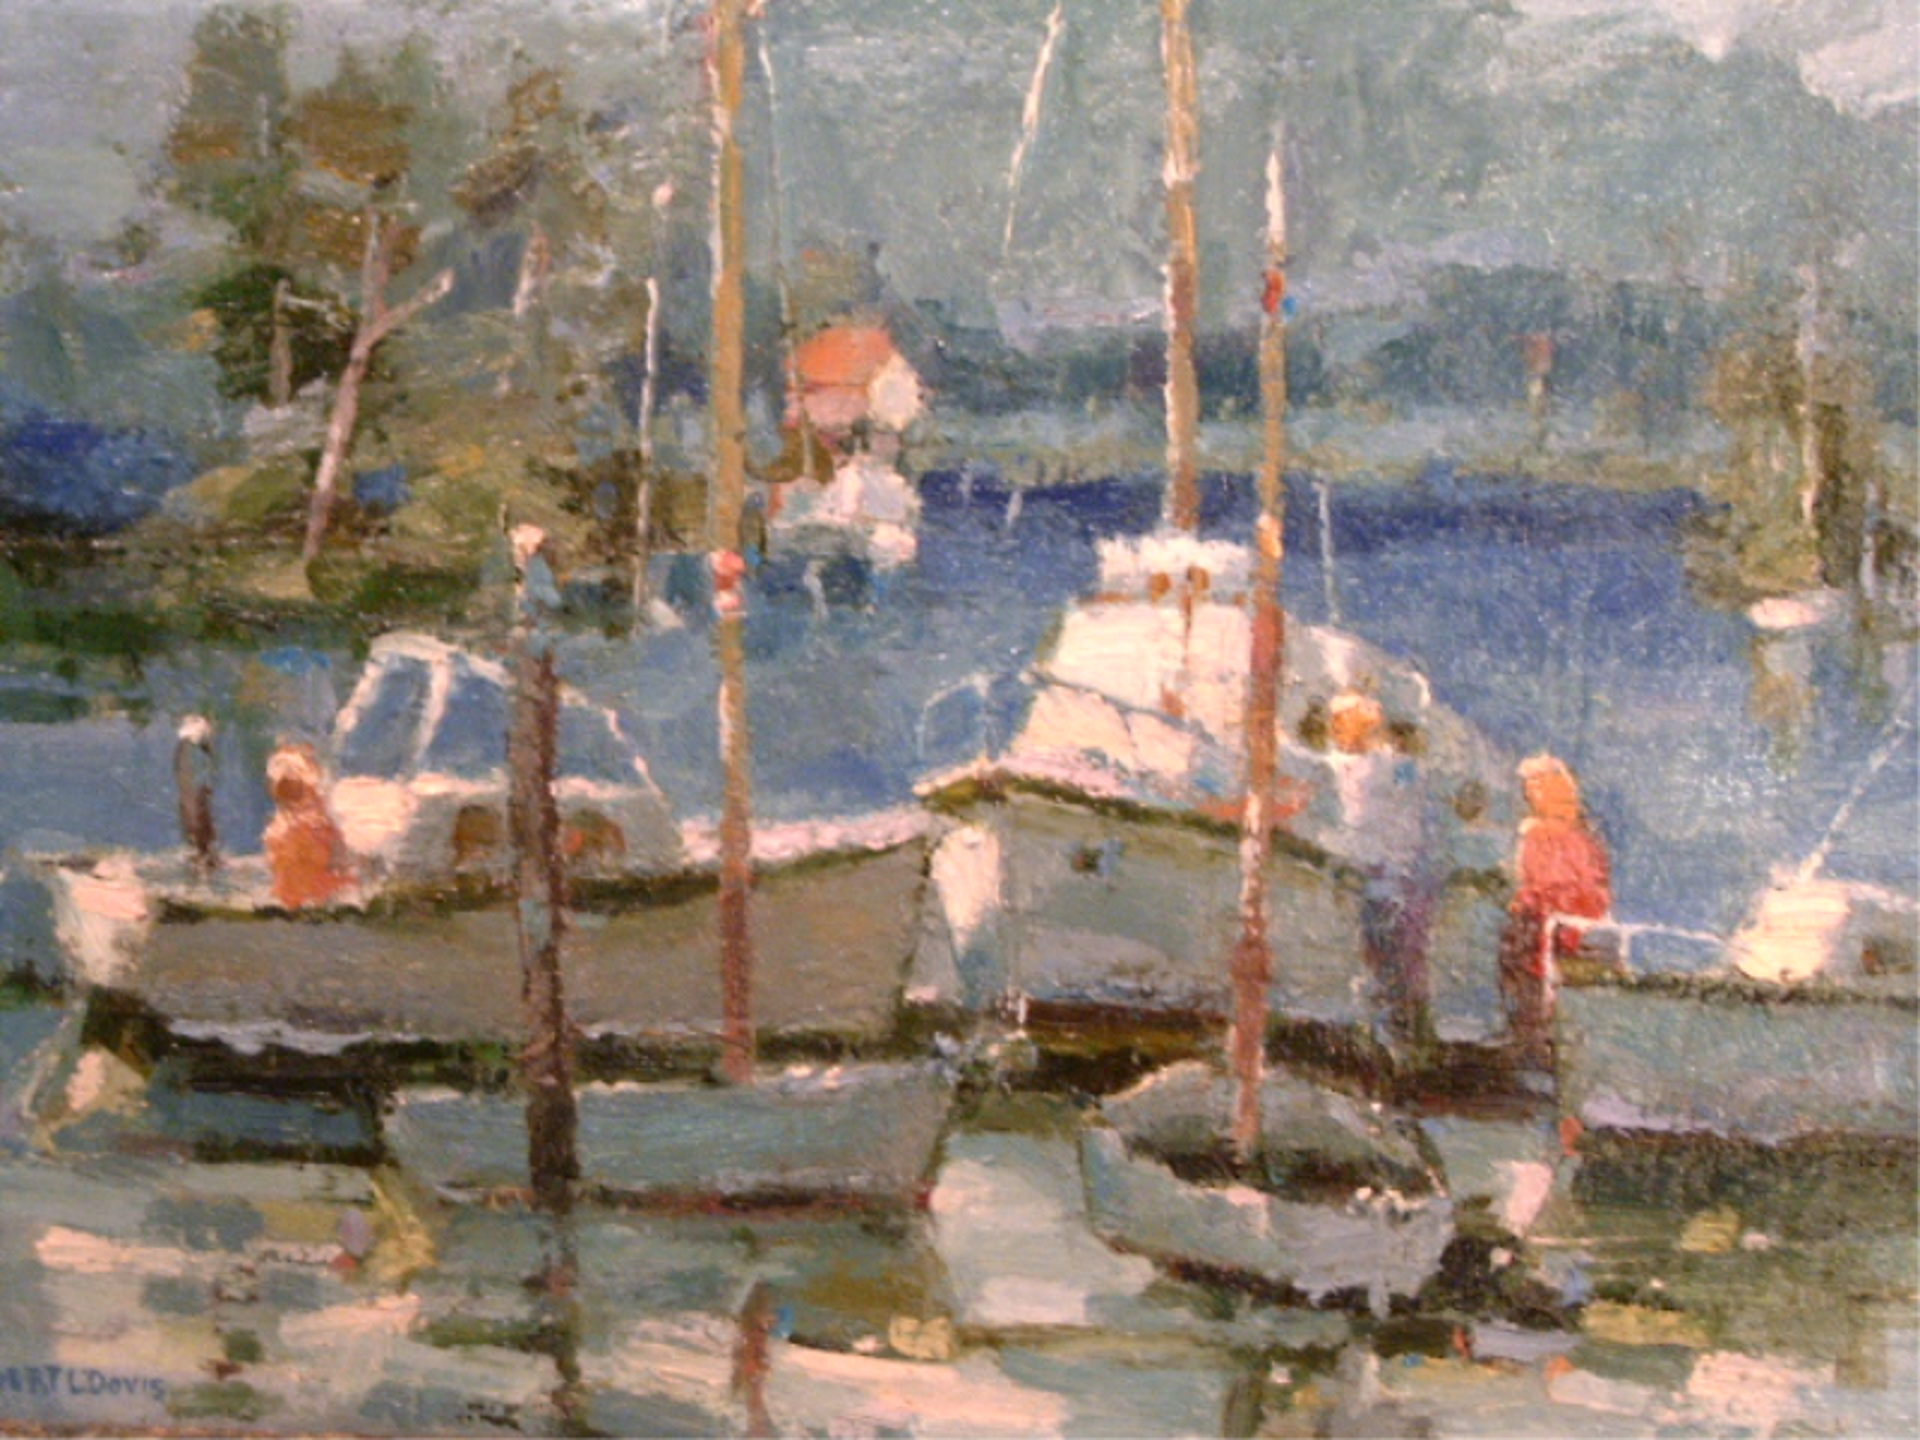 Boating at Lake Cachuma by Robert L. Davis (1930-2023)